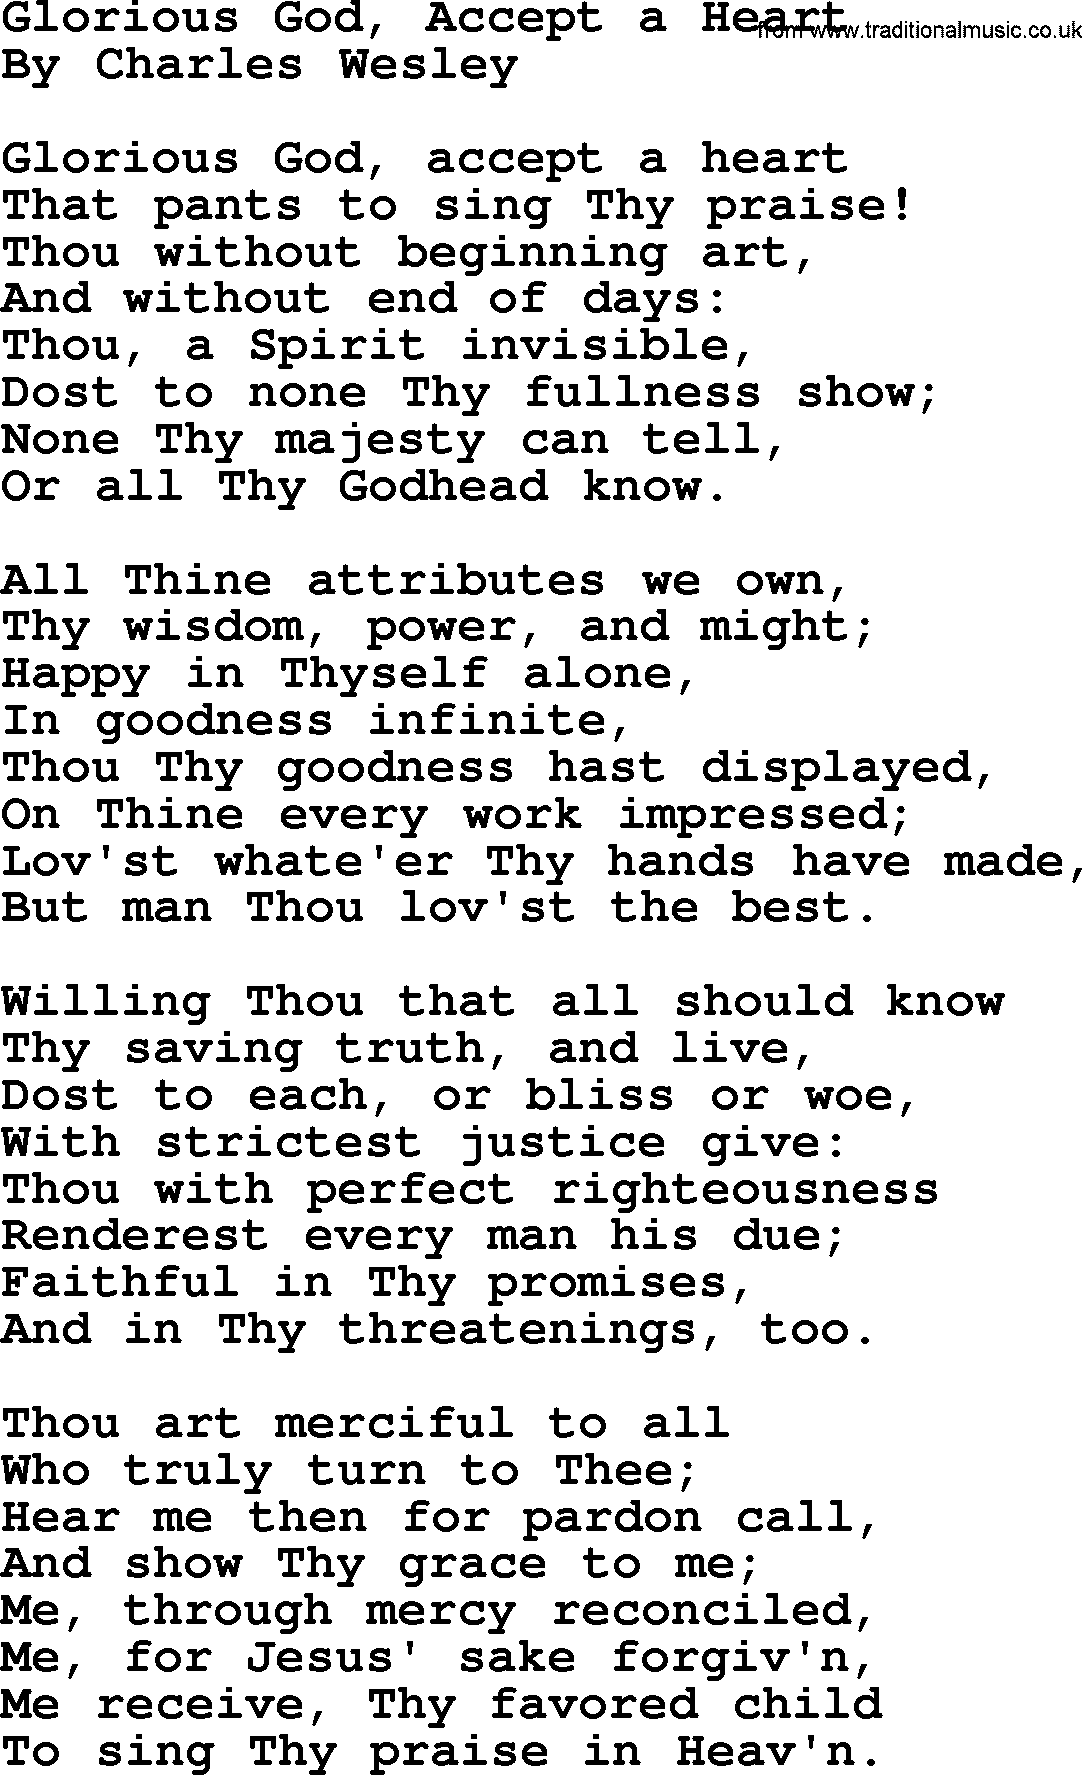 Charles Wesley hymn: Glorious God, Accept A Heart, lyrics